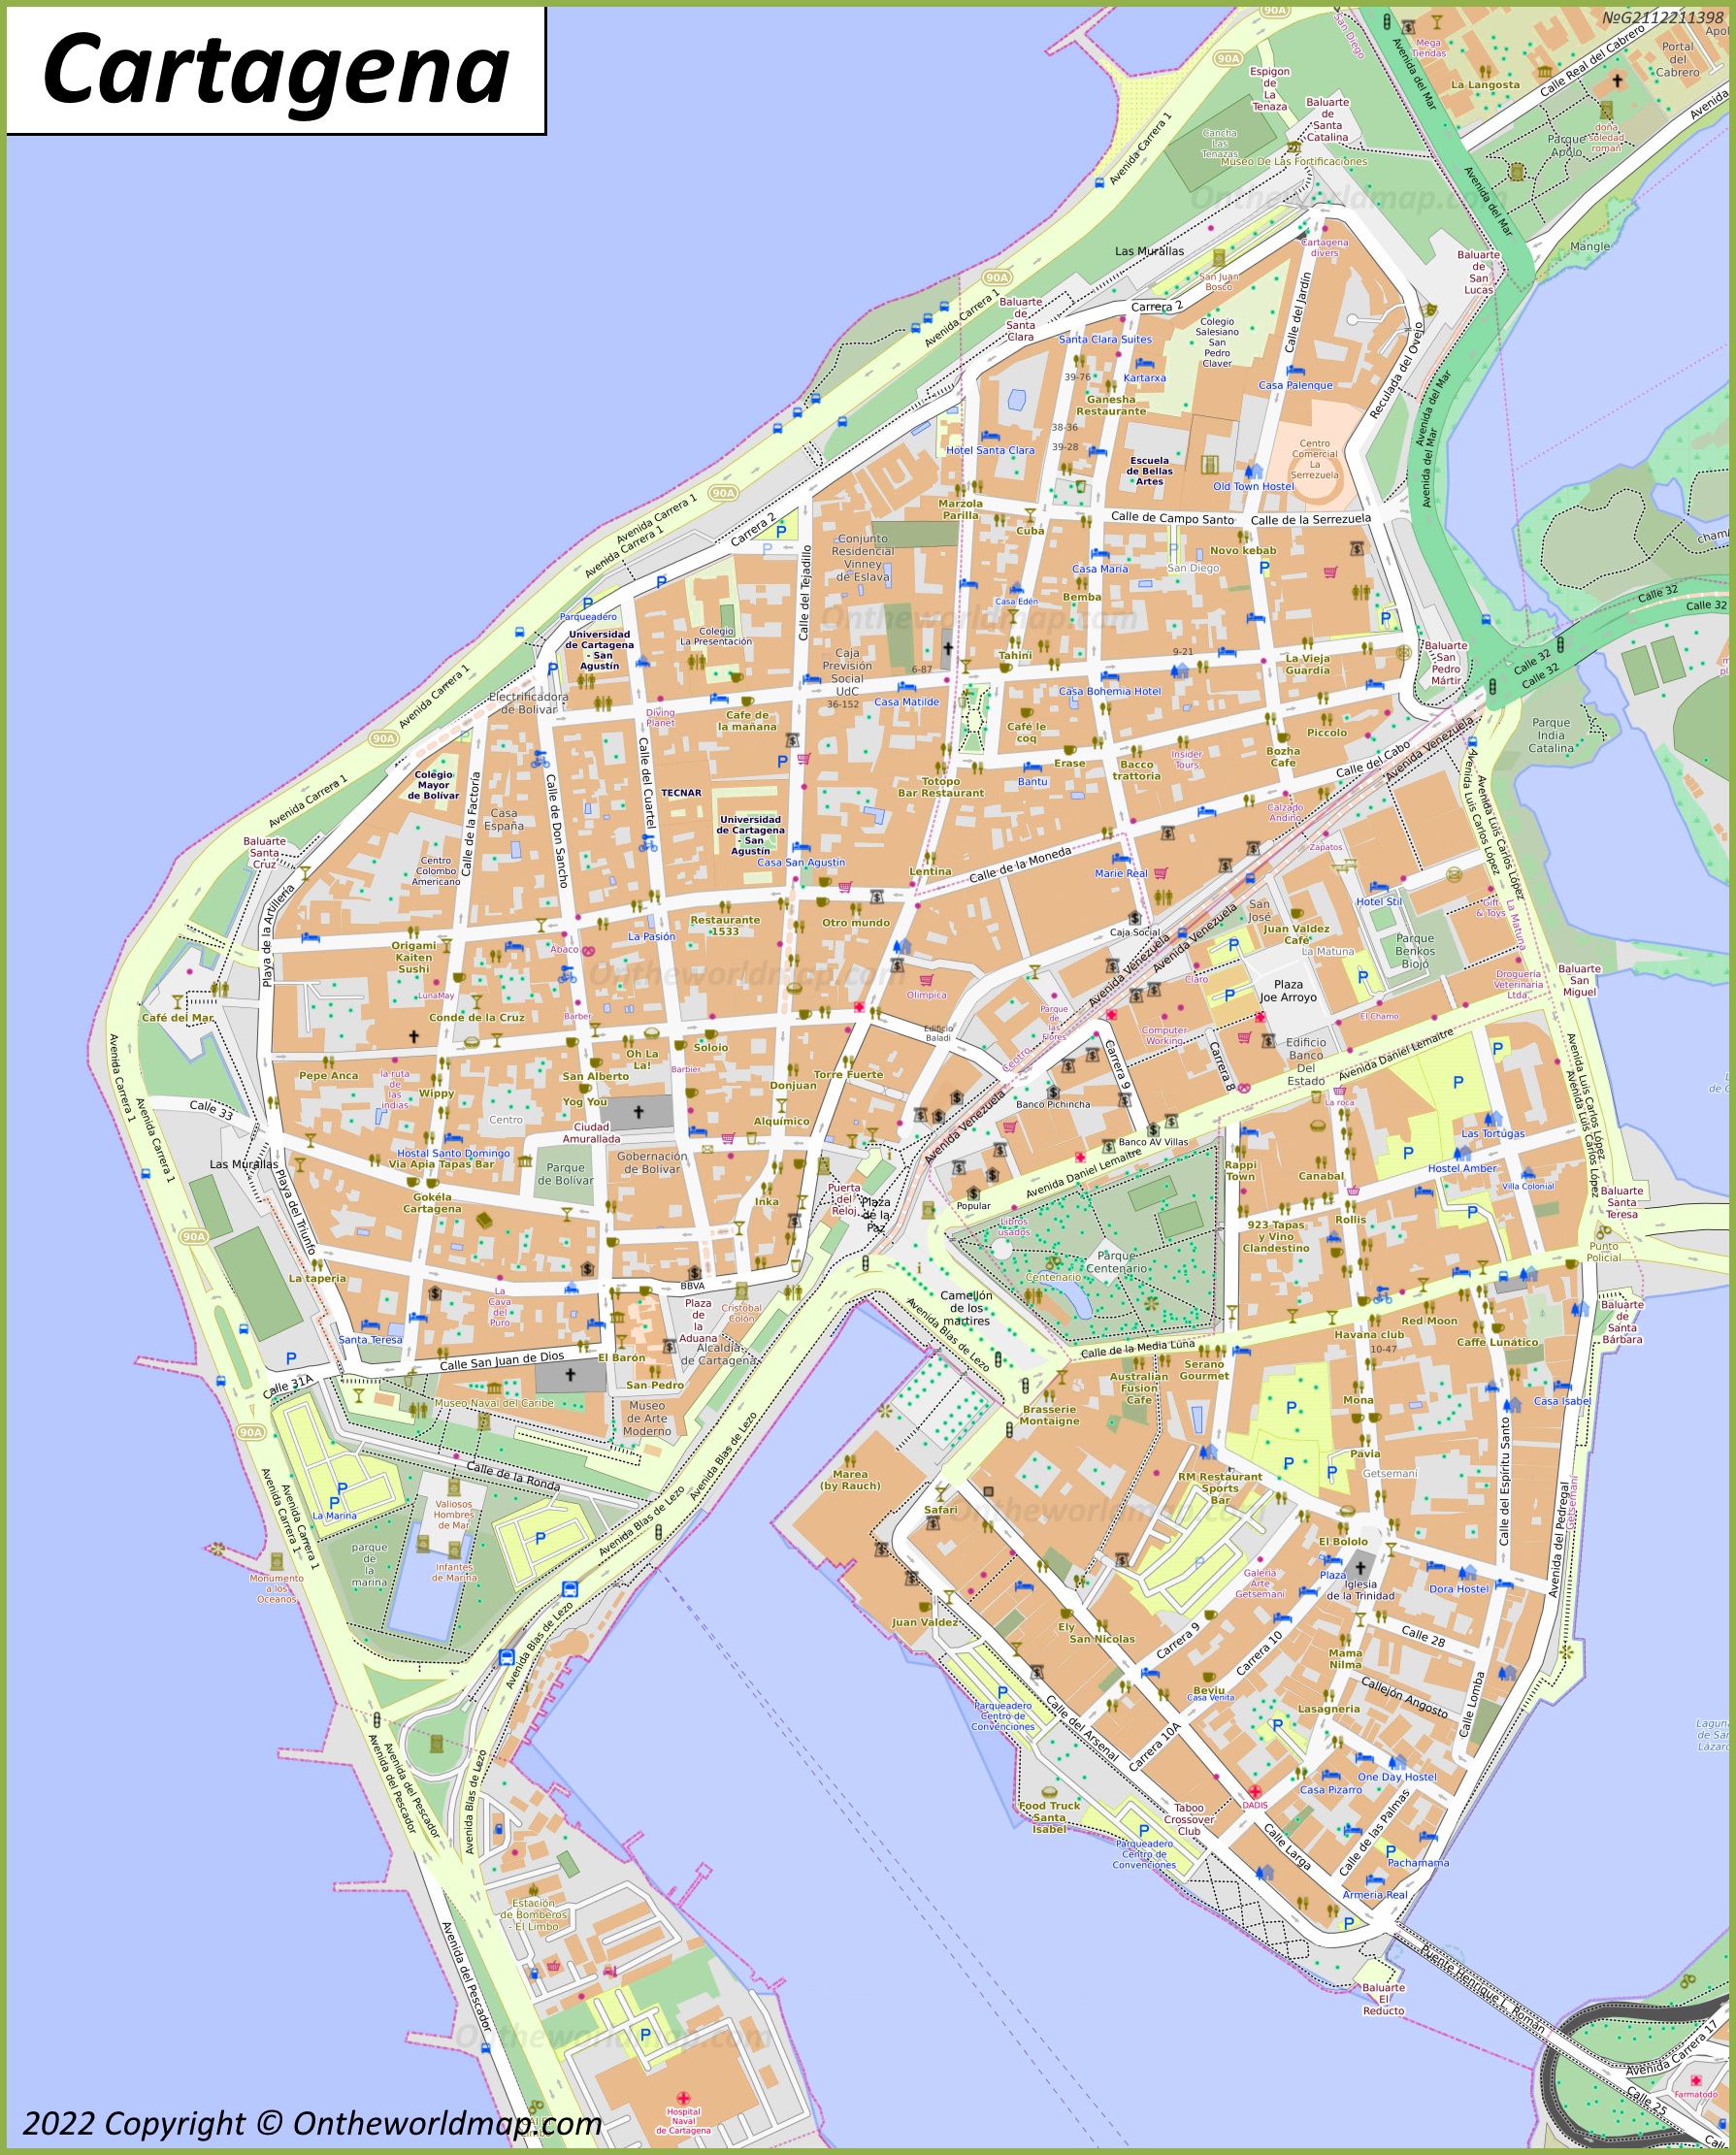 Cartagena - Mapa del centro